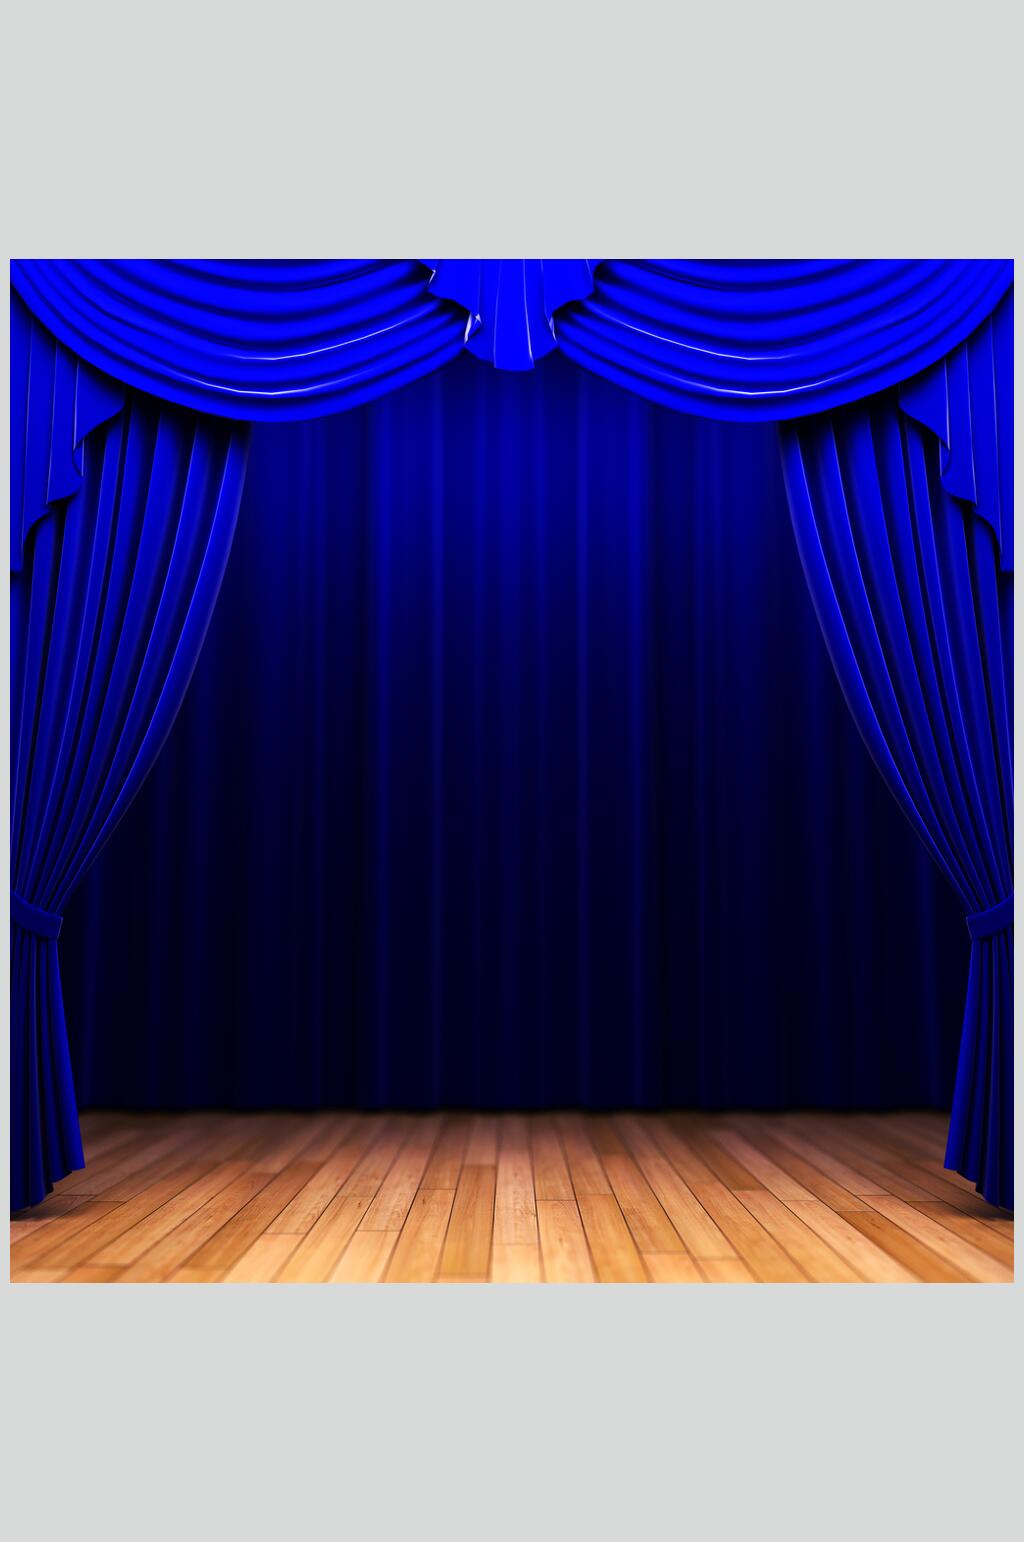 高清蓝色舞台幕布背景图片